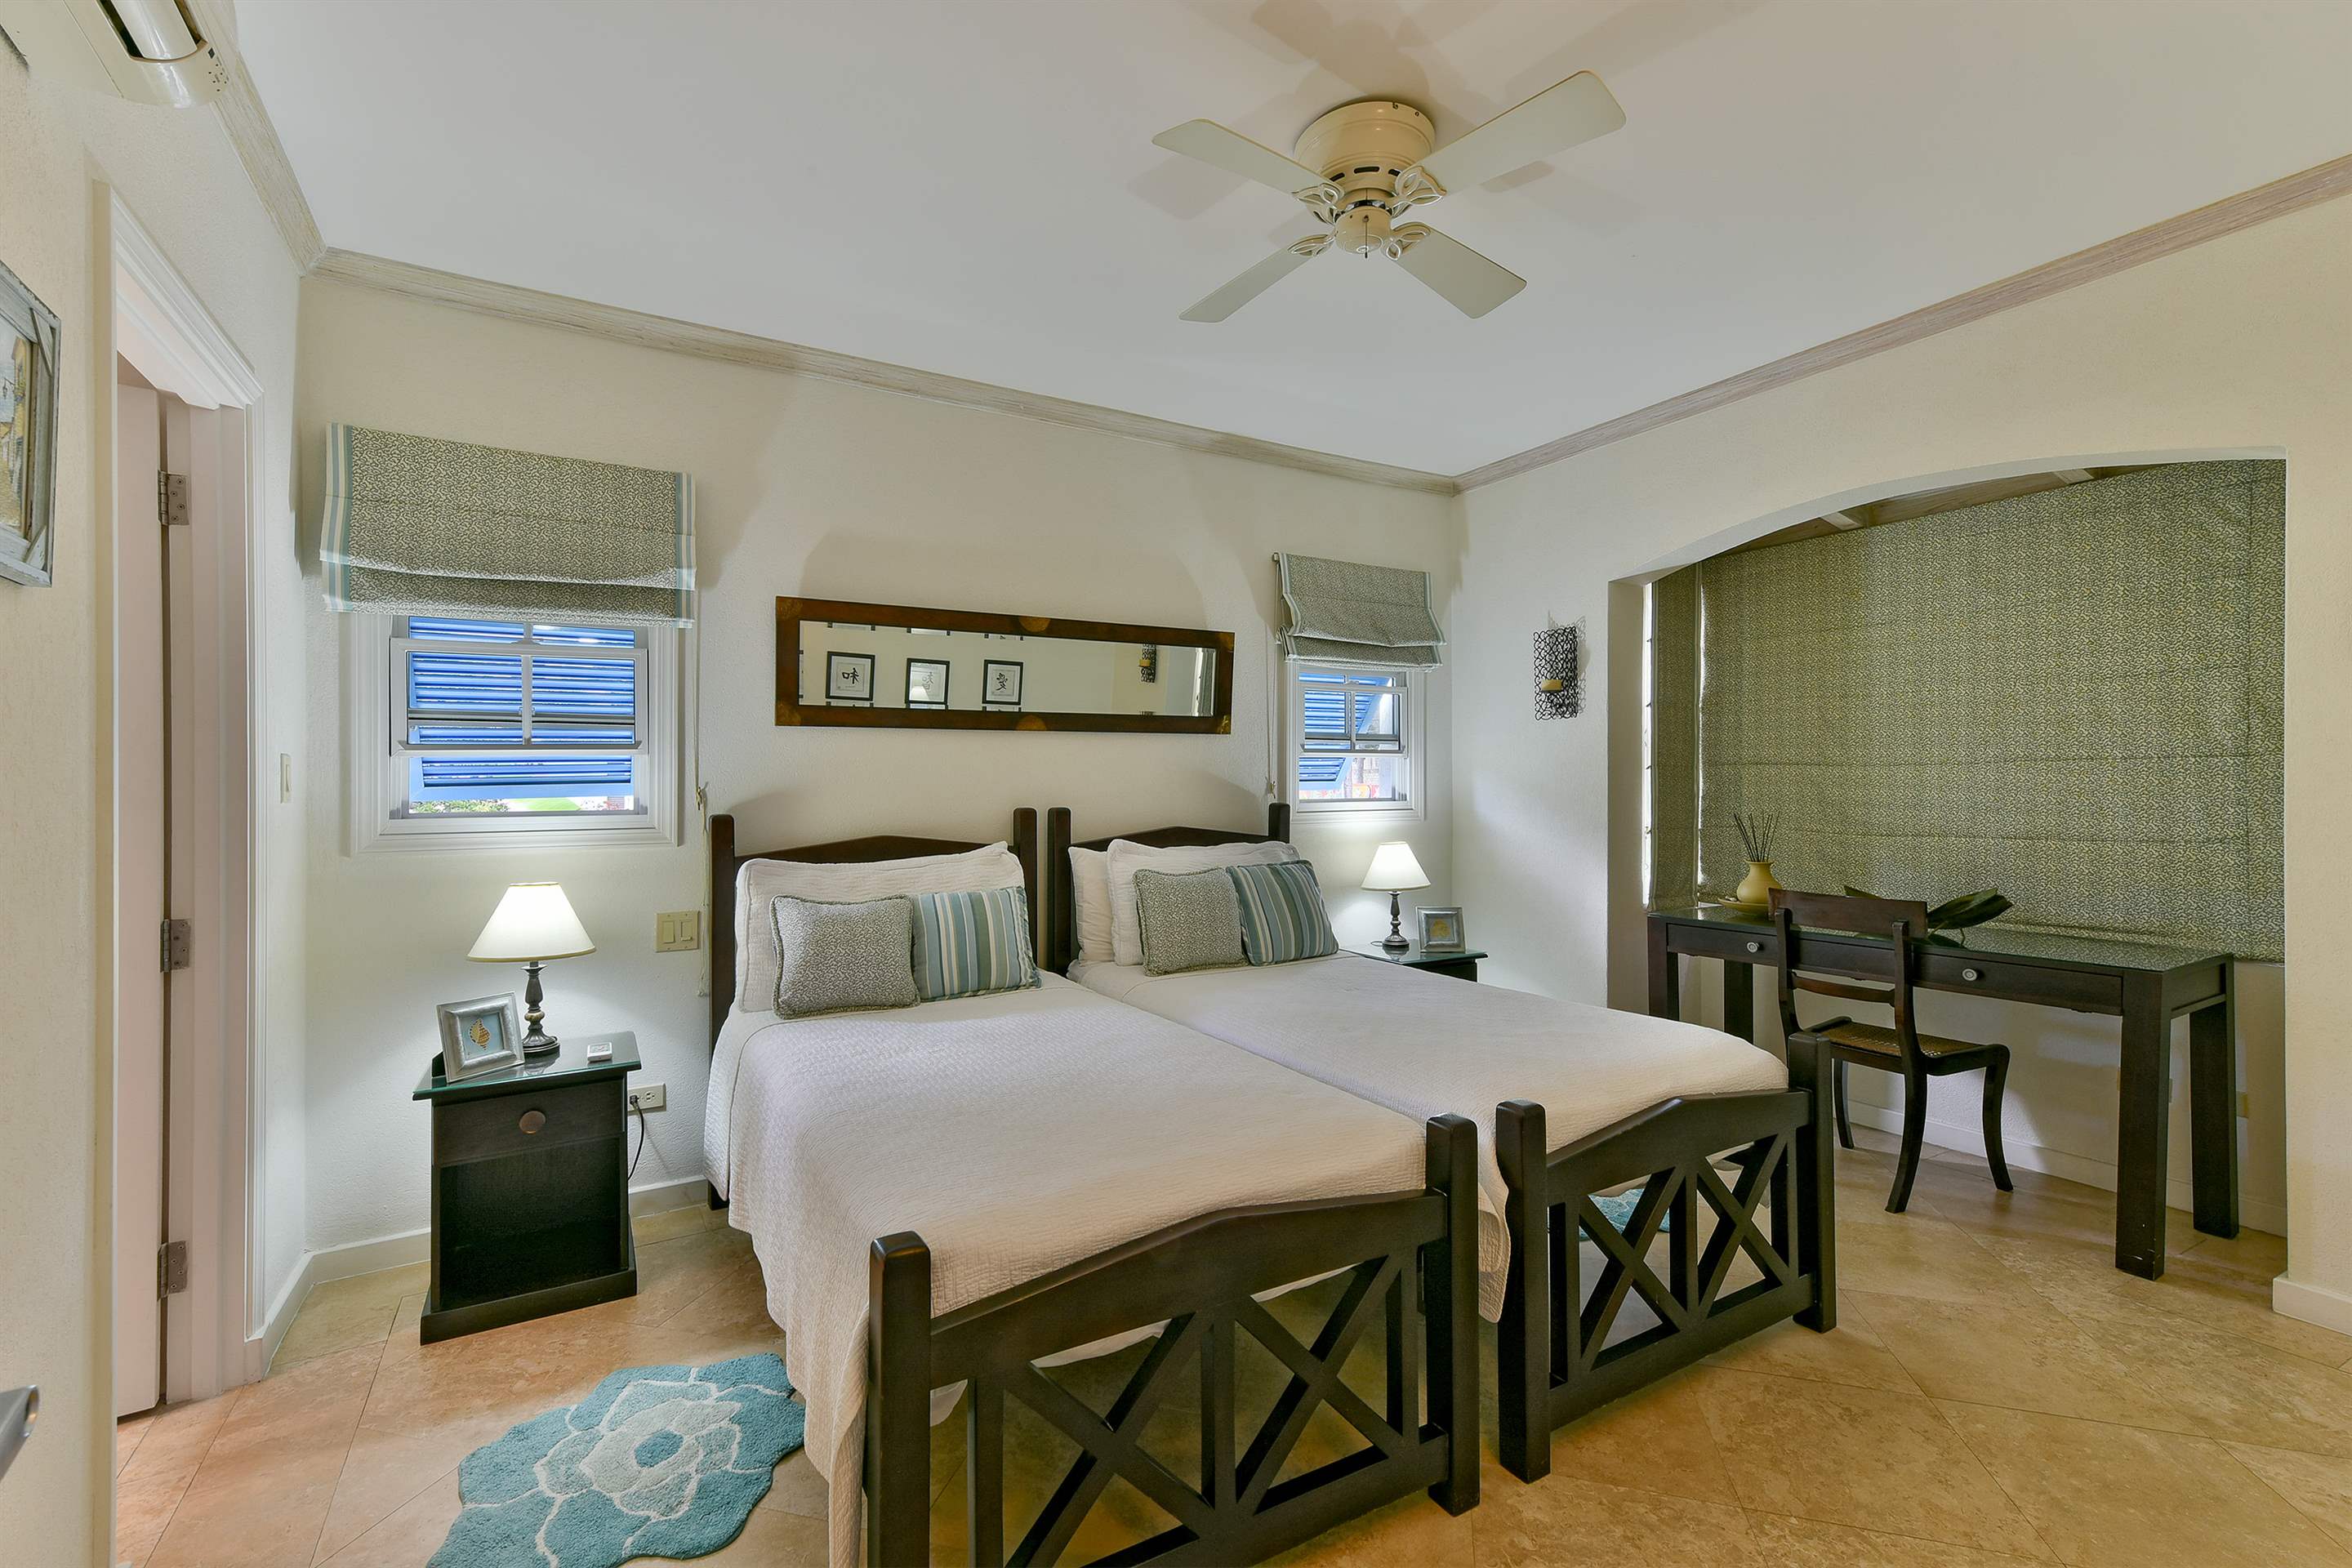 Maxwell Beach Villas 101, 2 bedroom, 2 bedroom apartment in St. Lawrence Gap & South Coast, Barbados Photo #15